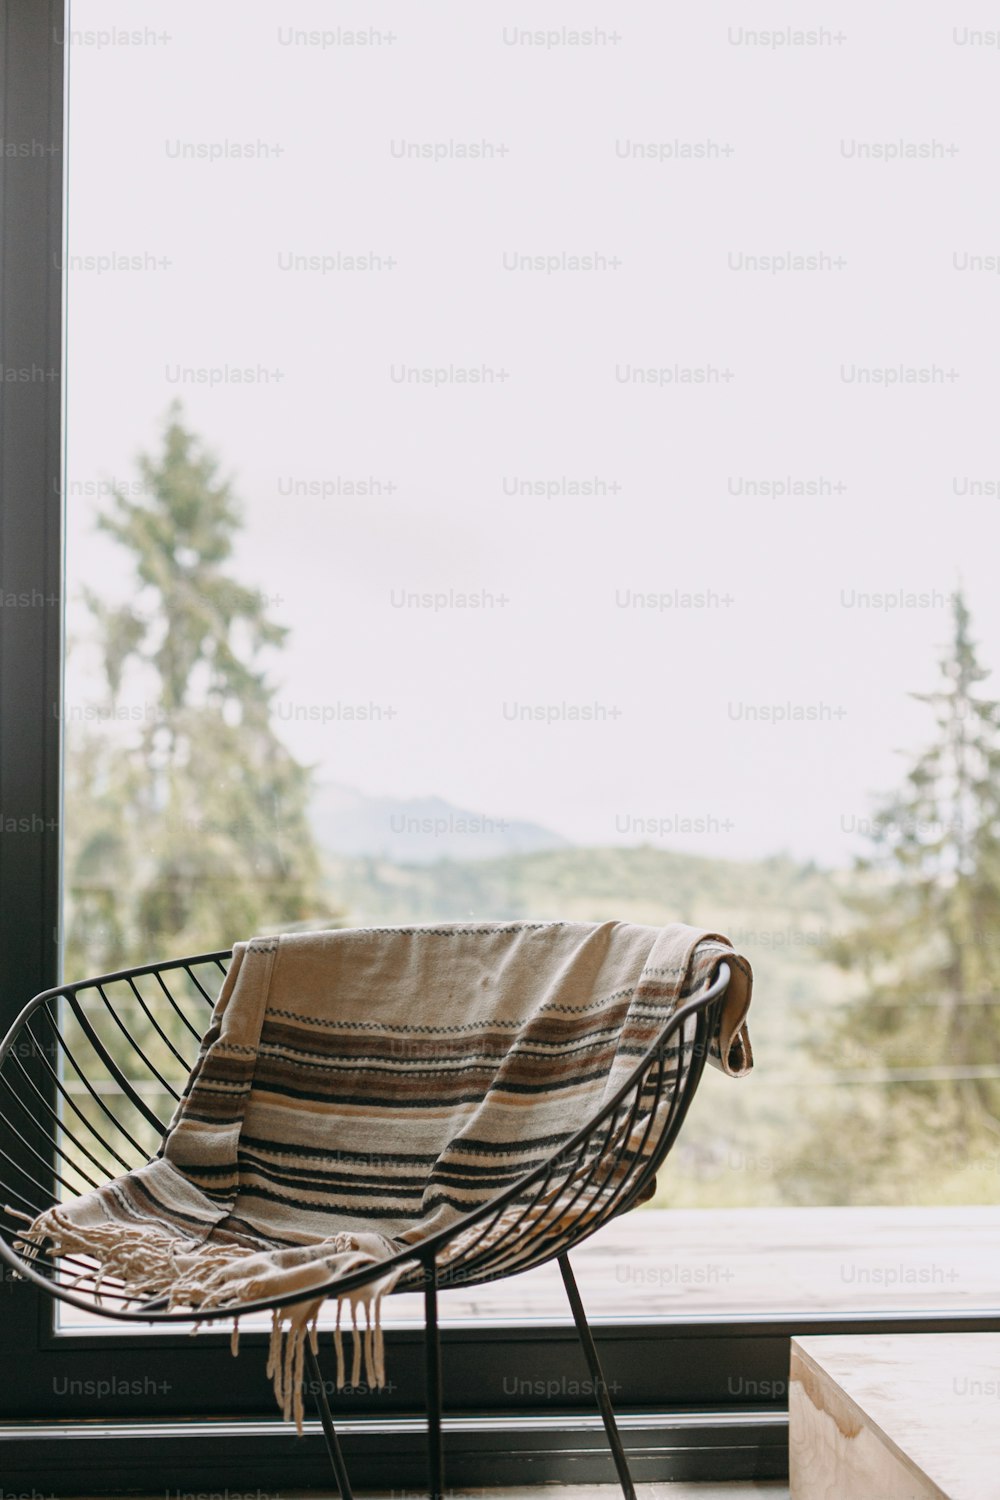 山々を望む大きな窓の背景には、居心地の良い毛布と金属の上の薪が置かれたモダンな黒い椅子が置かれています。寒い季節のキャビンでの居心地の良い暖かく穏やかなひととき。